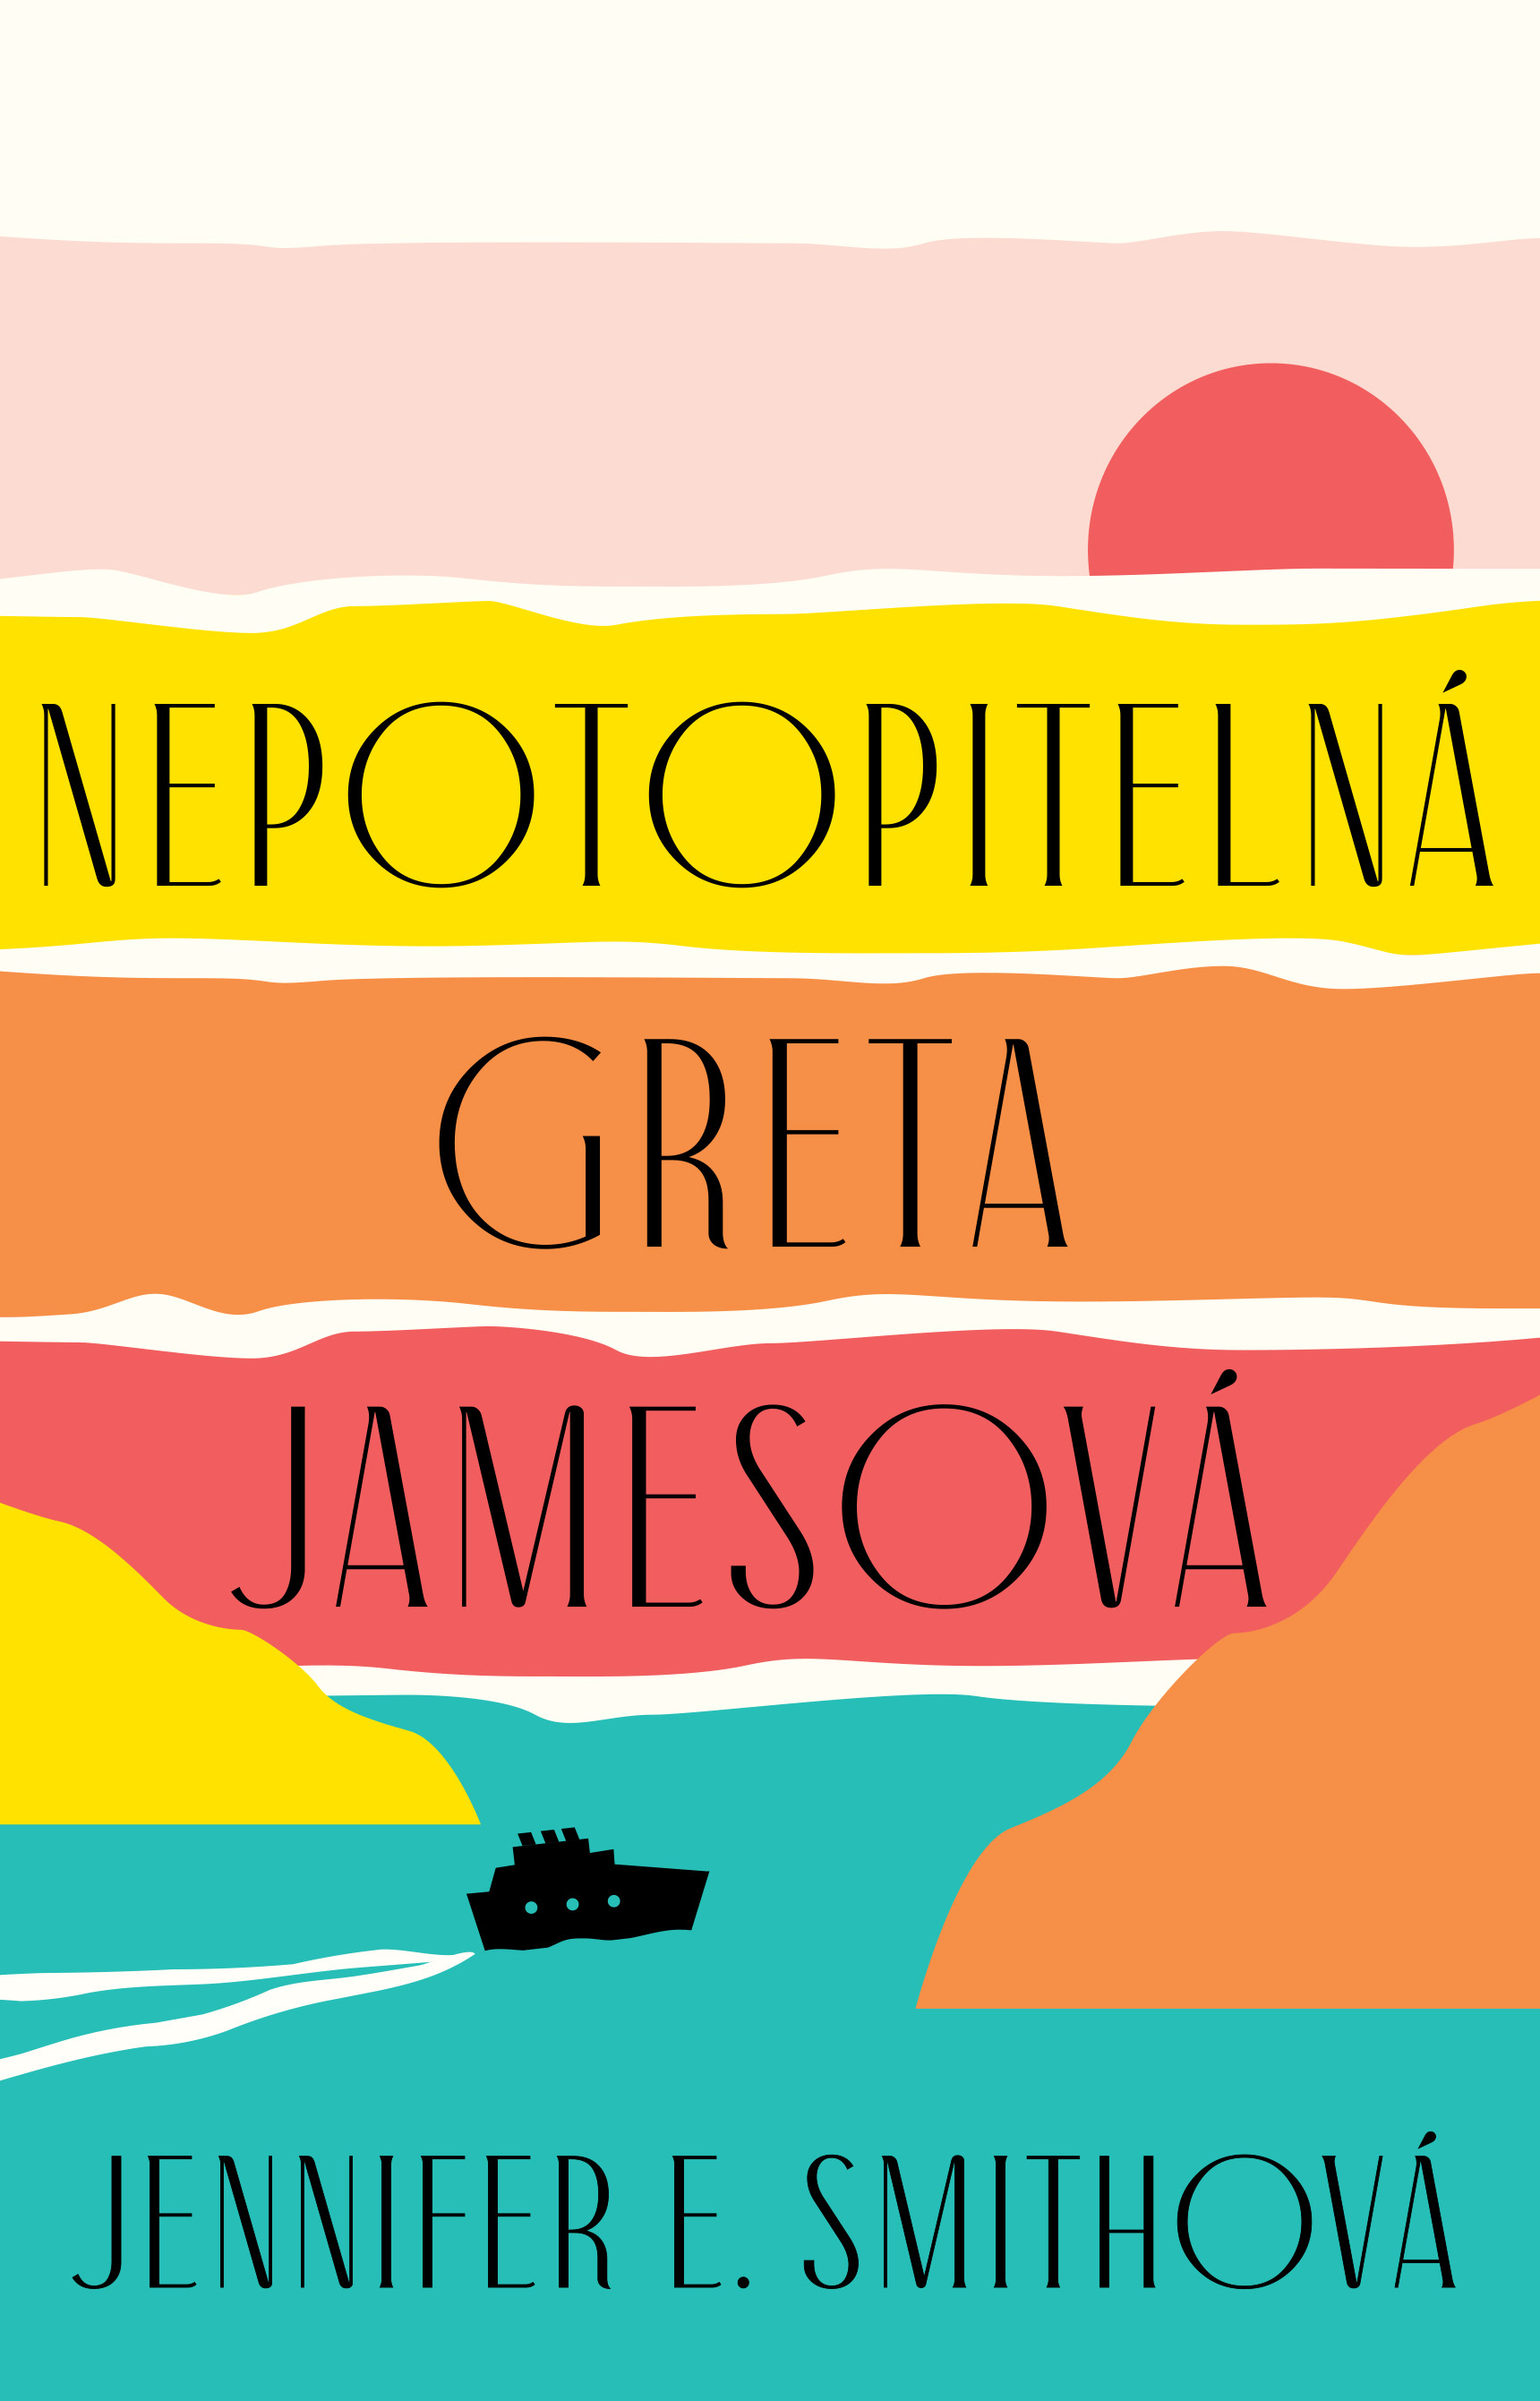 E-kniha Nepotopitelná Greta Jamesová - Jennifer E. Smith